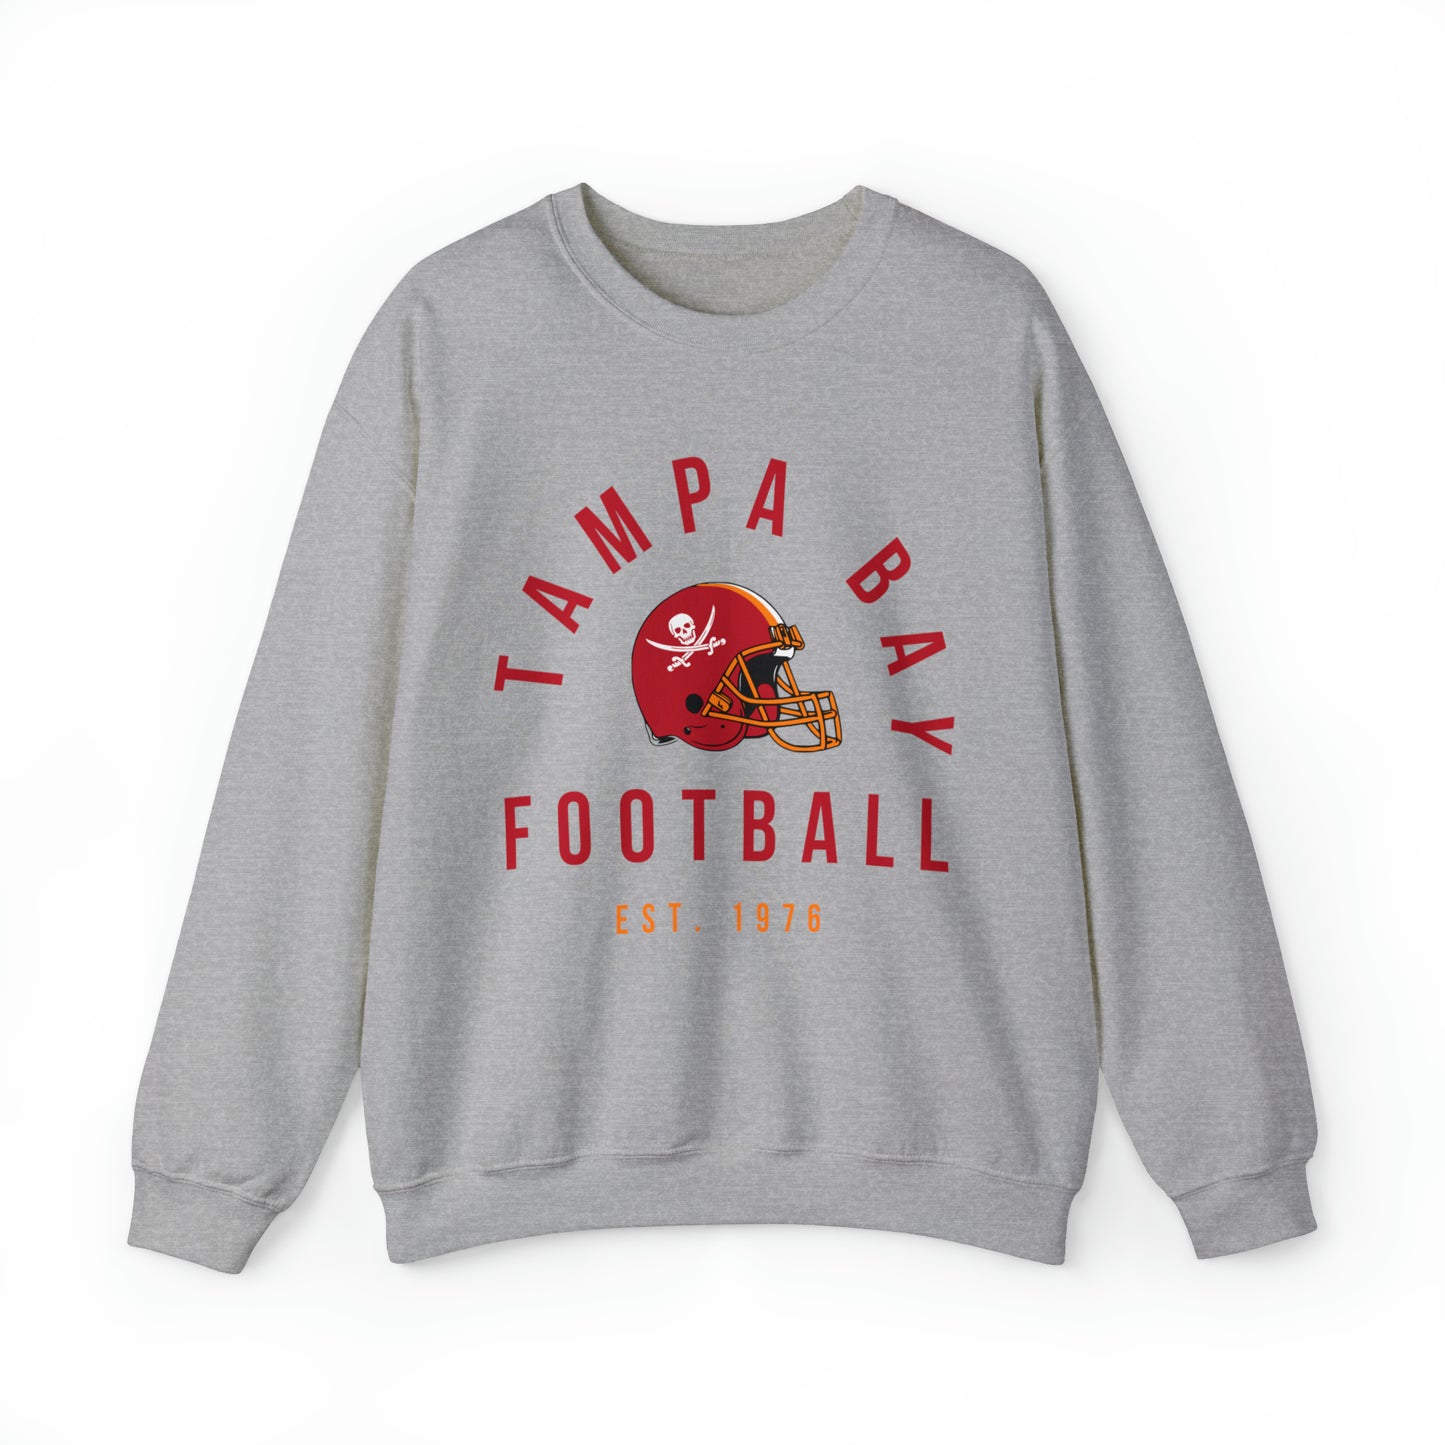 Throwback Tampa Bay Buccaneers Crewneck - Retro Men's & Women's Oversized Football Sweatshirt - Design 3